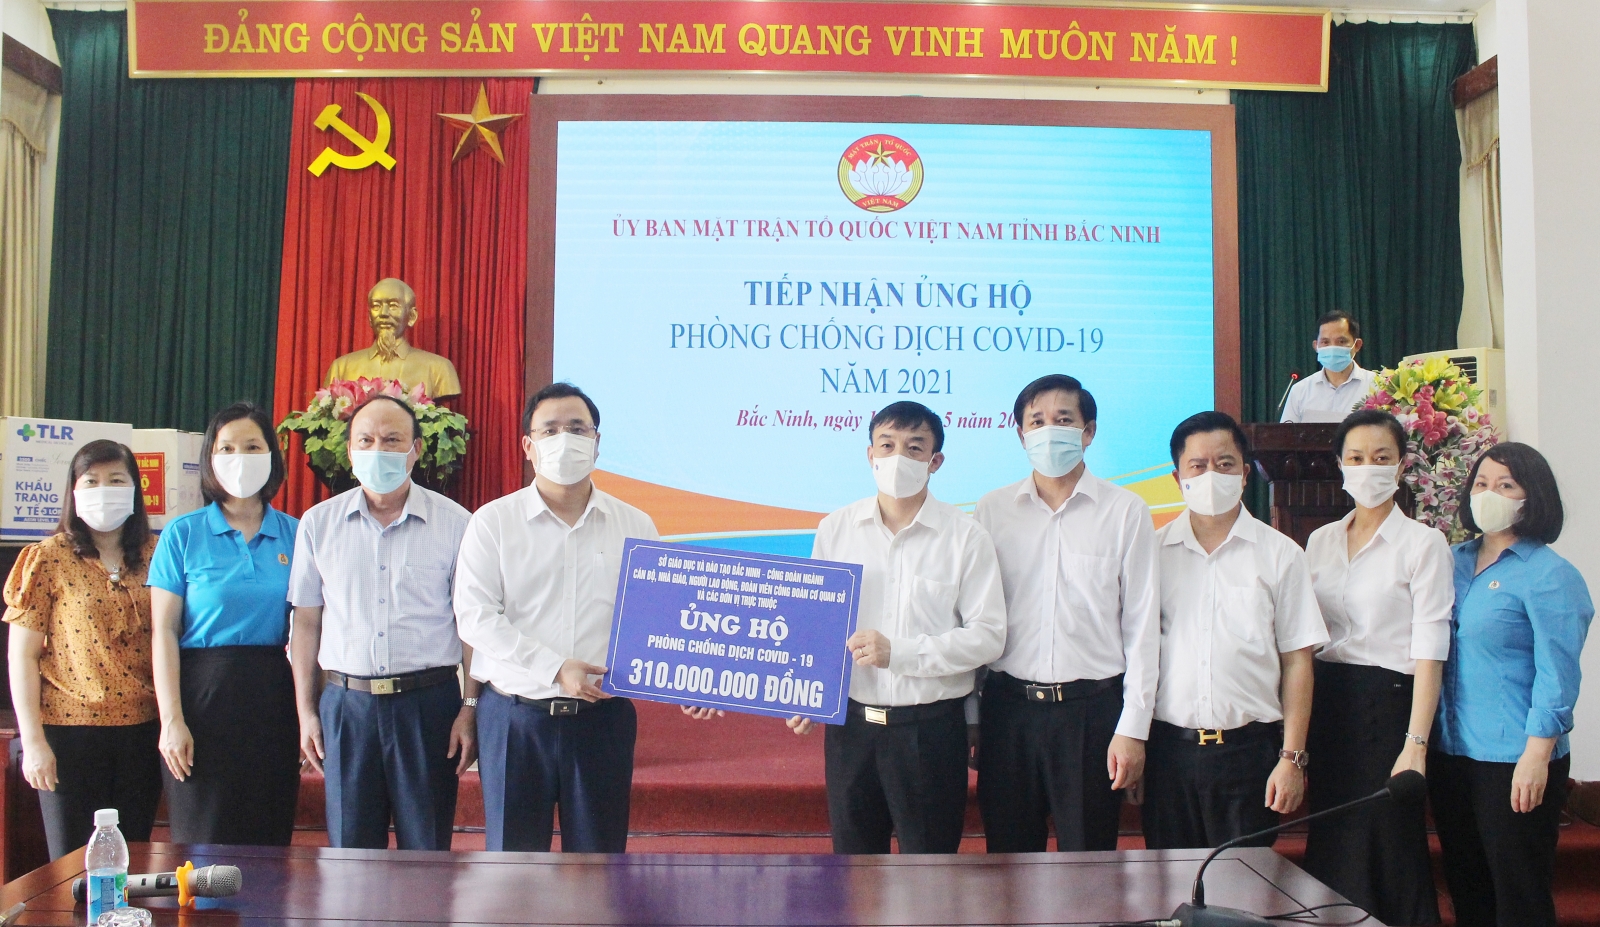 Bắc Ninh: Ngành Giáo dục ủng hộ hơn 300 triệu đồng cho tuyến đầu chống dịch